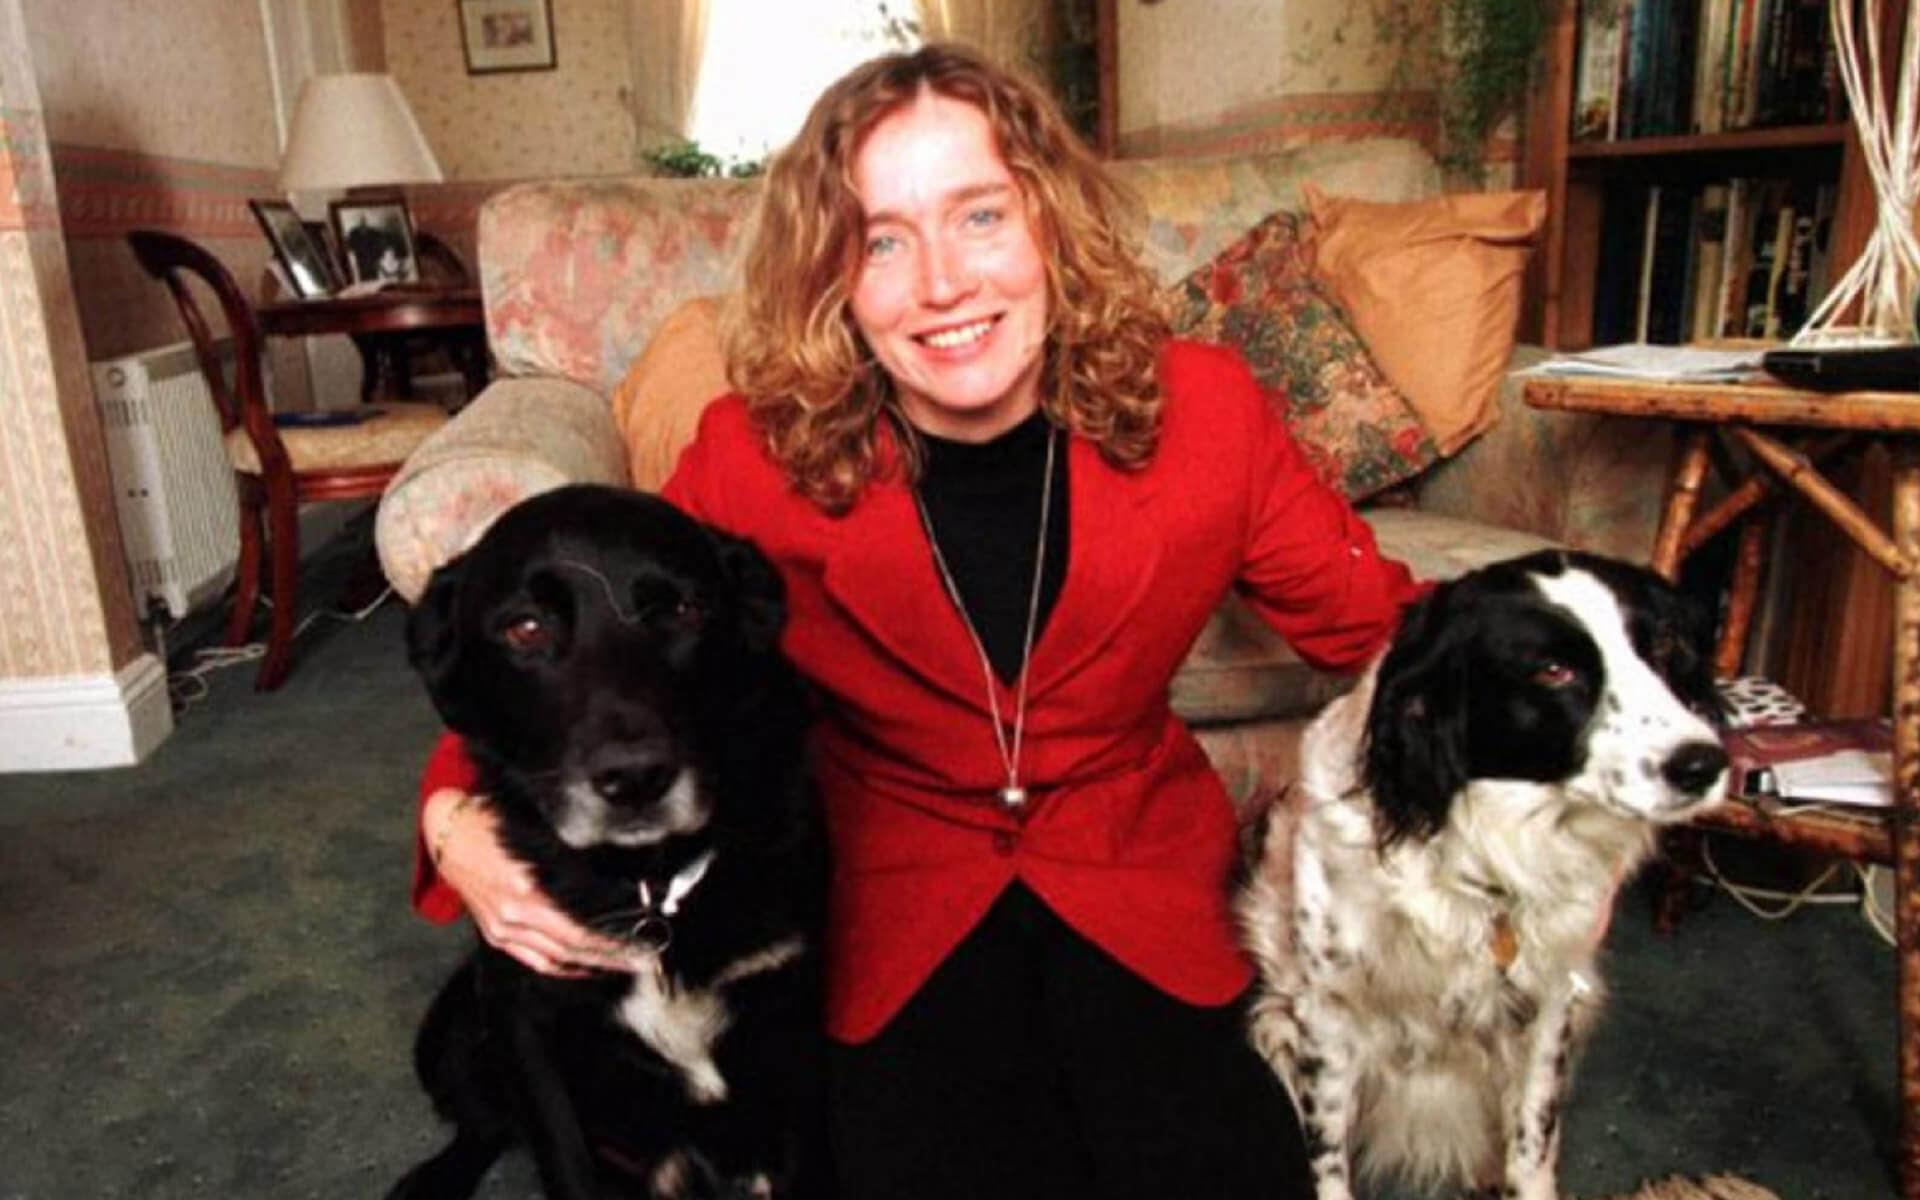 Linda McCartney Award for Animal Welfare - Juliet Gellatley